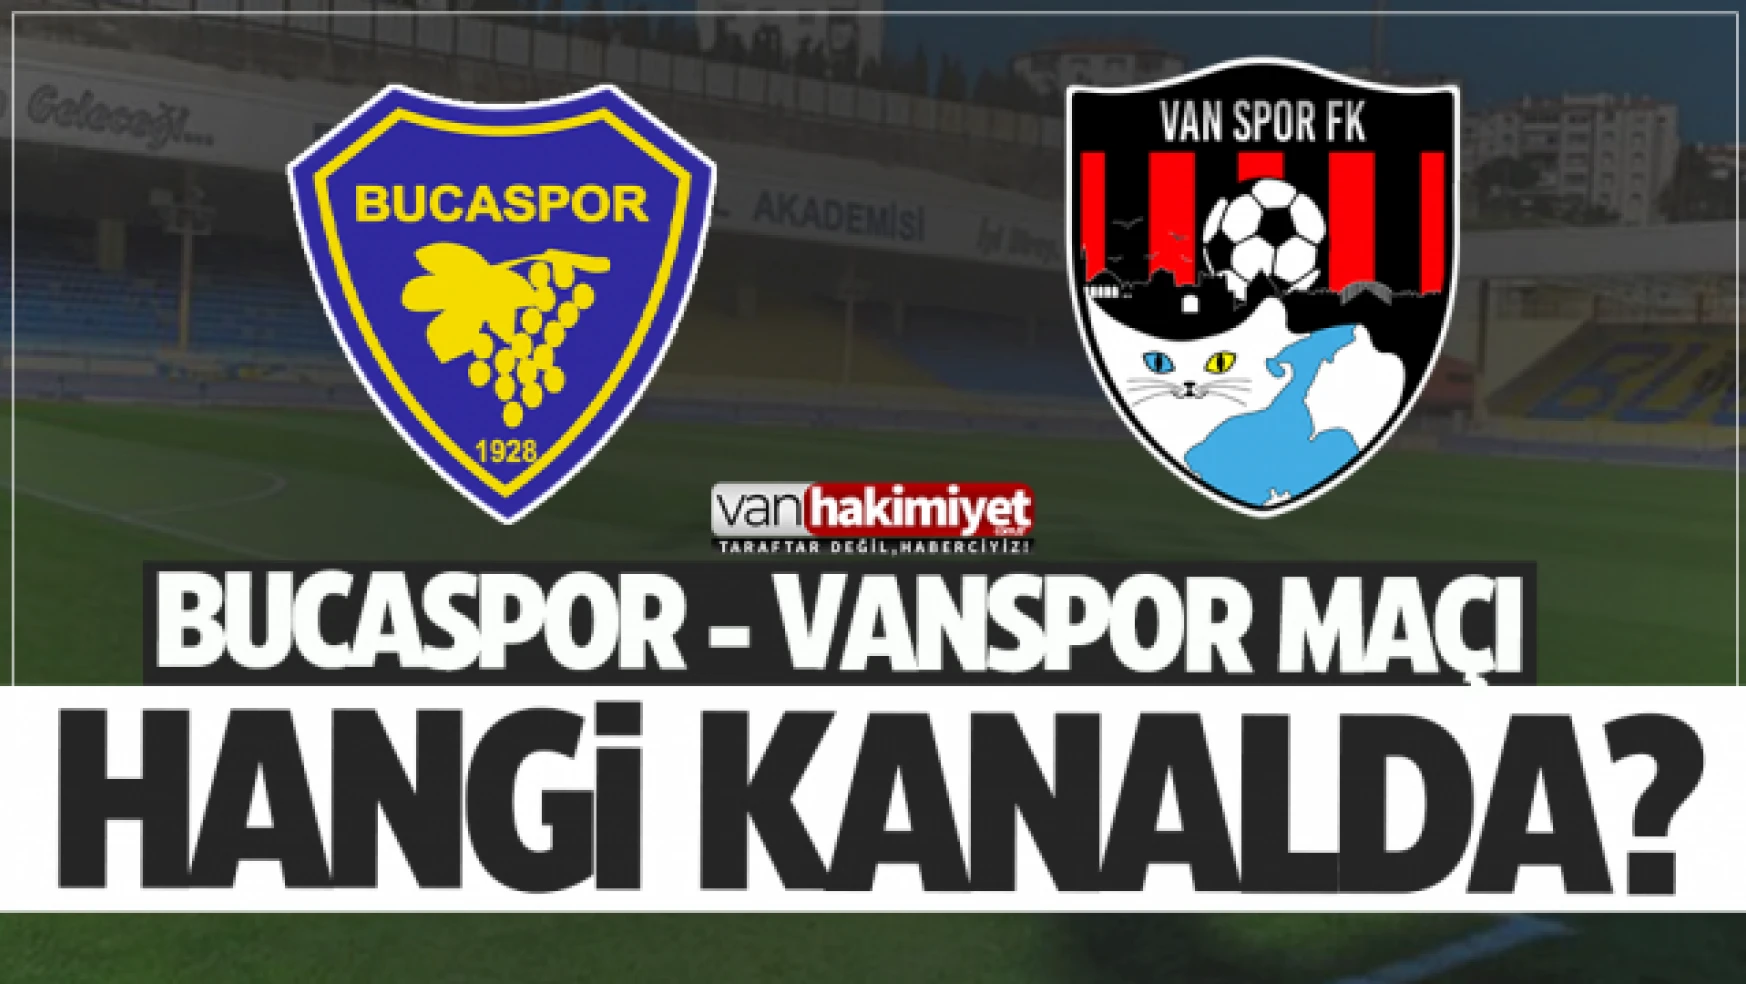 Bucaspor - Vanspor maçı hangi kanalda? Canlı yayınlanacak mı?